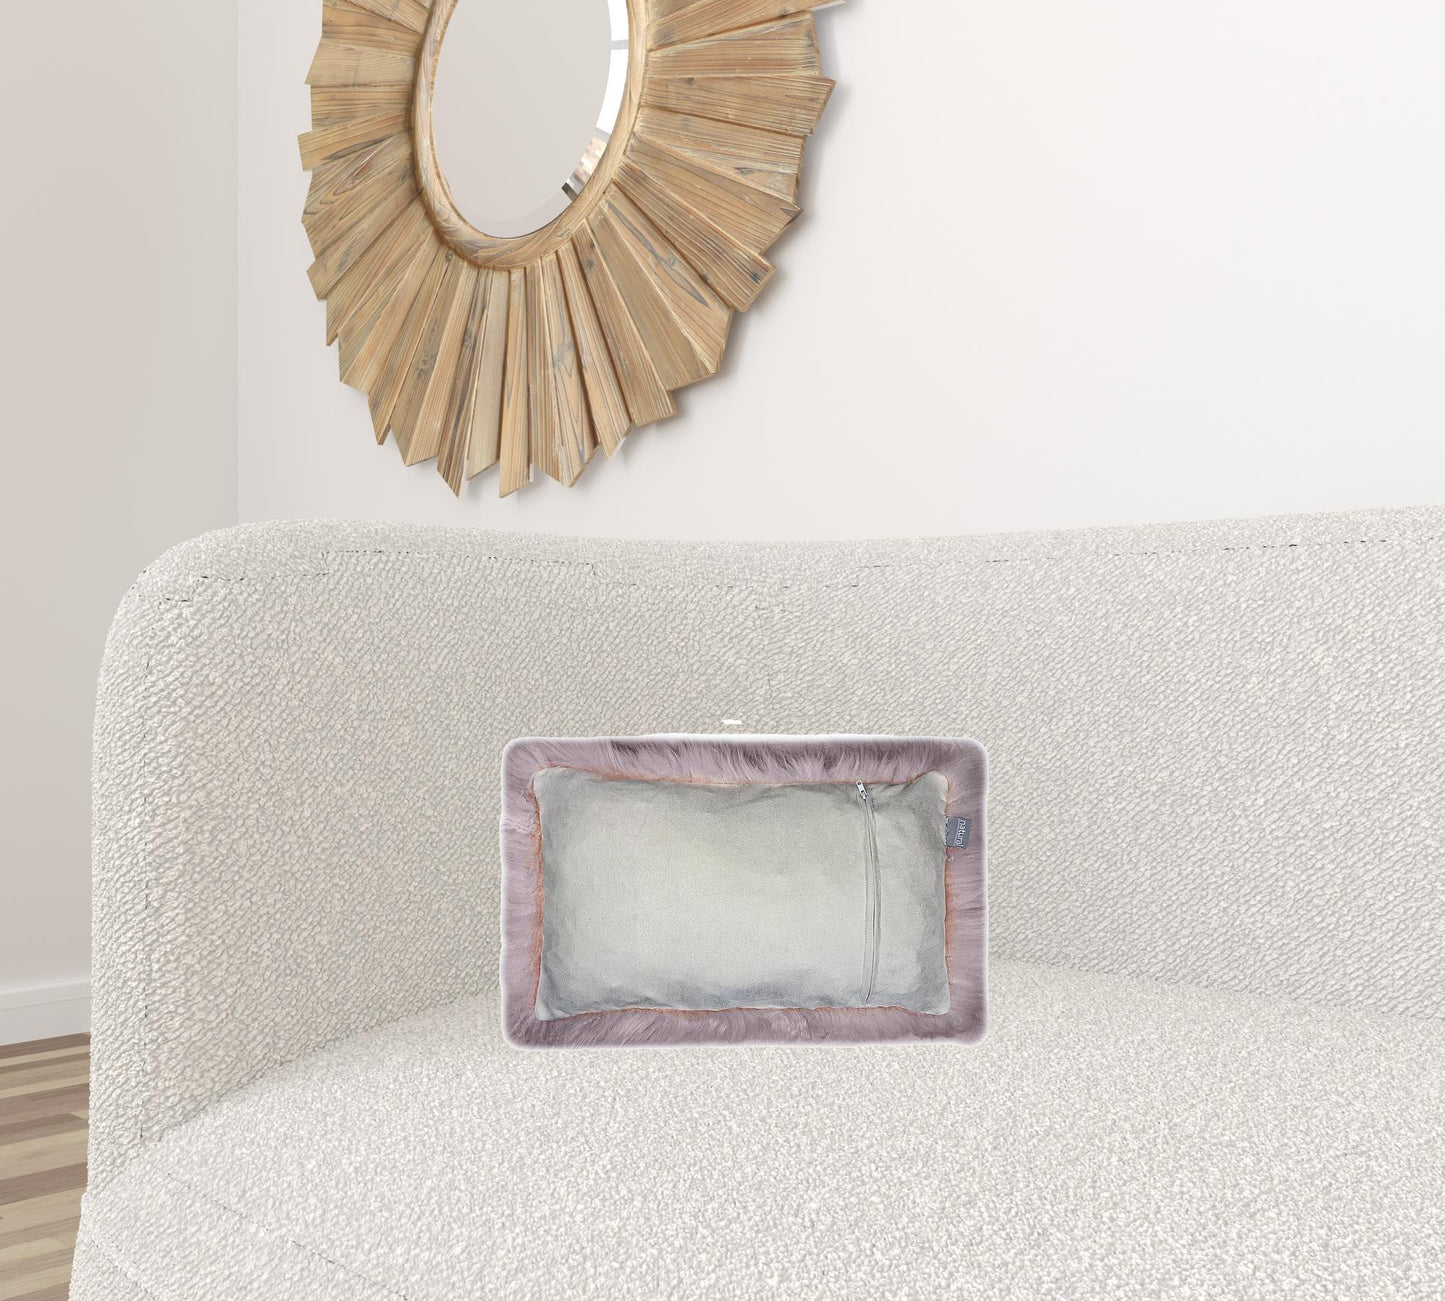 Set Of Two Blush Natural Sheepskin Lumbar Pillows